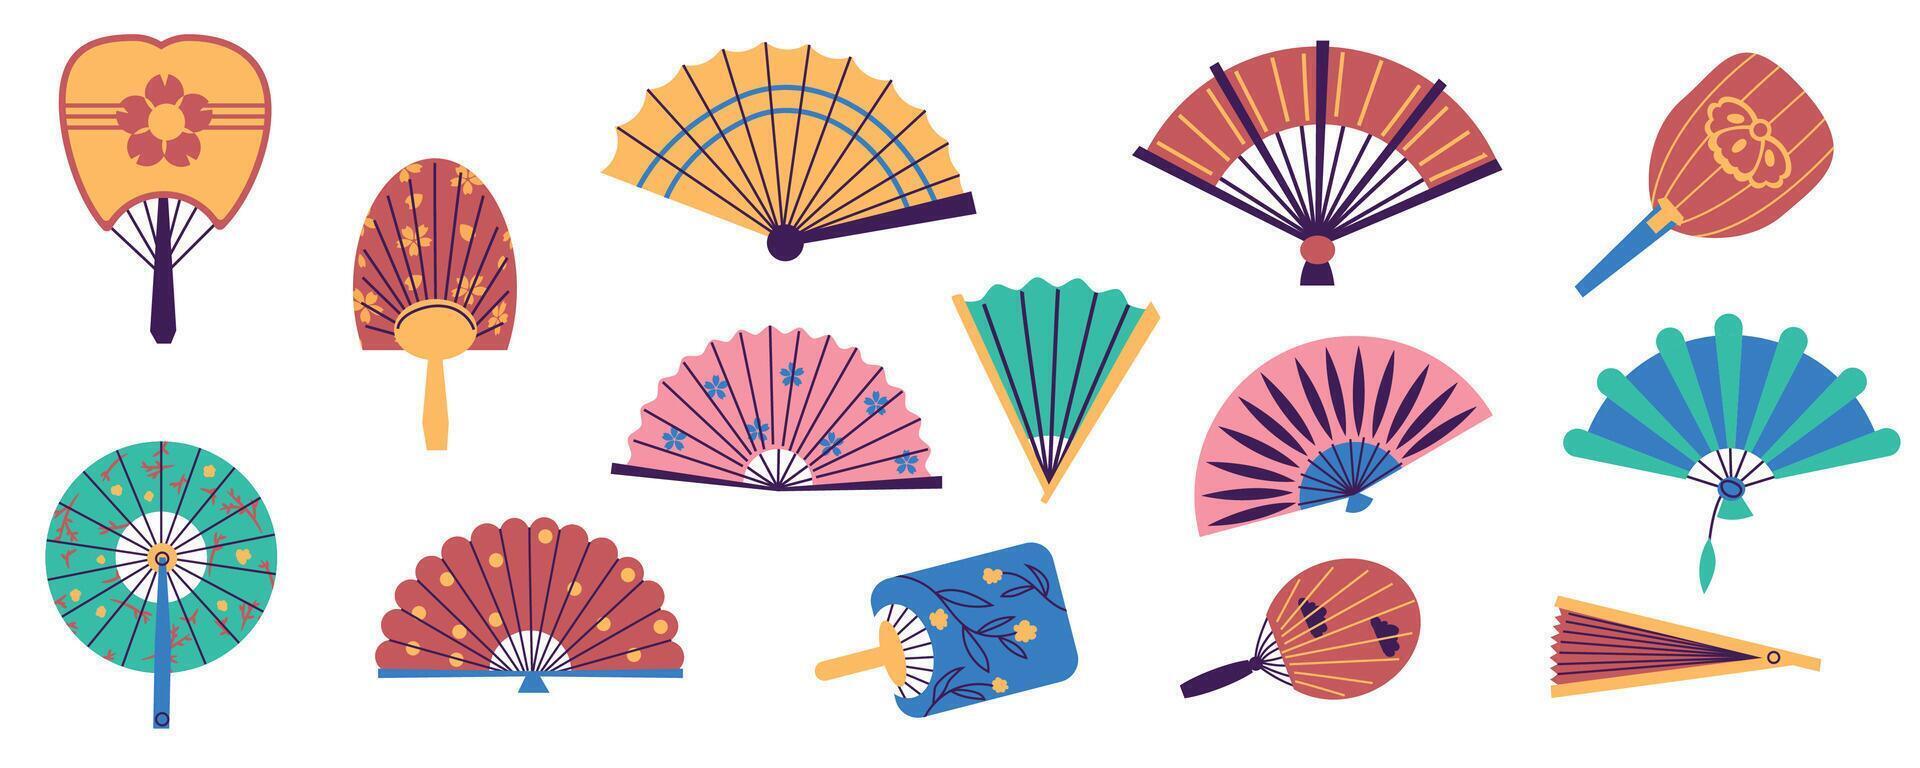 papel mano aficionados. tradicional oriental plegable aficionados, mano viento accesorios plano estilo diferente color. vector chino japonés asiático aficionados conjunto